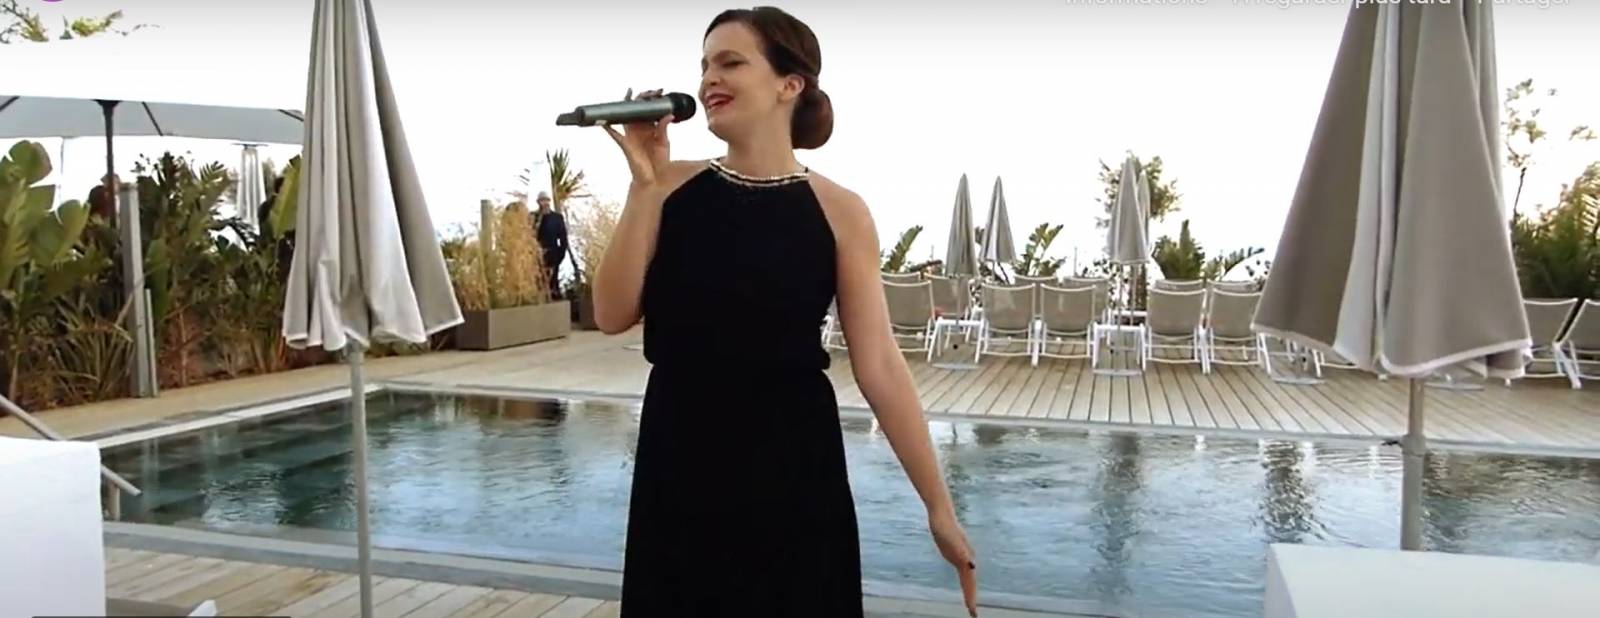 Chanteuse pour cocktail d'une soirée privée russe à Nice (06) – Provence Alpes Côte d’Azur